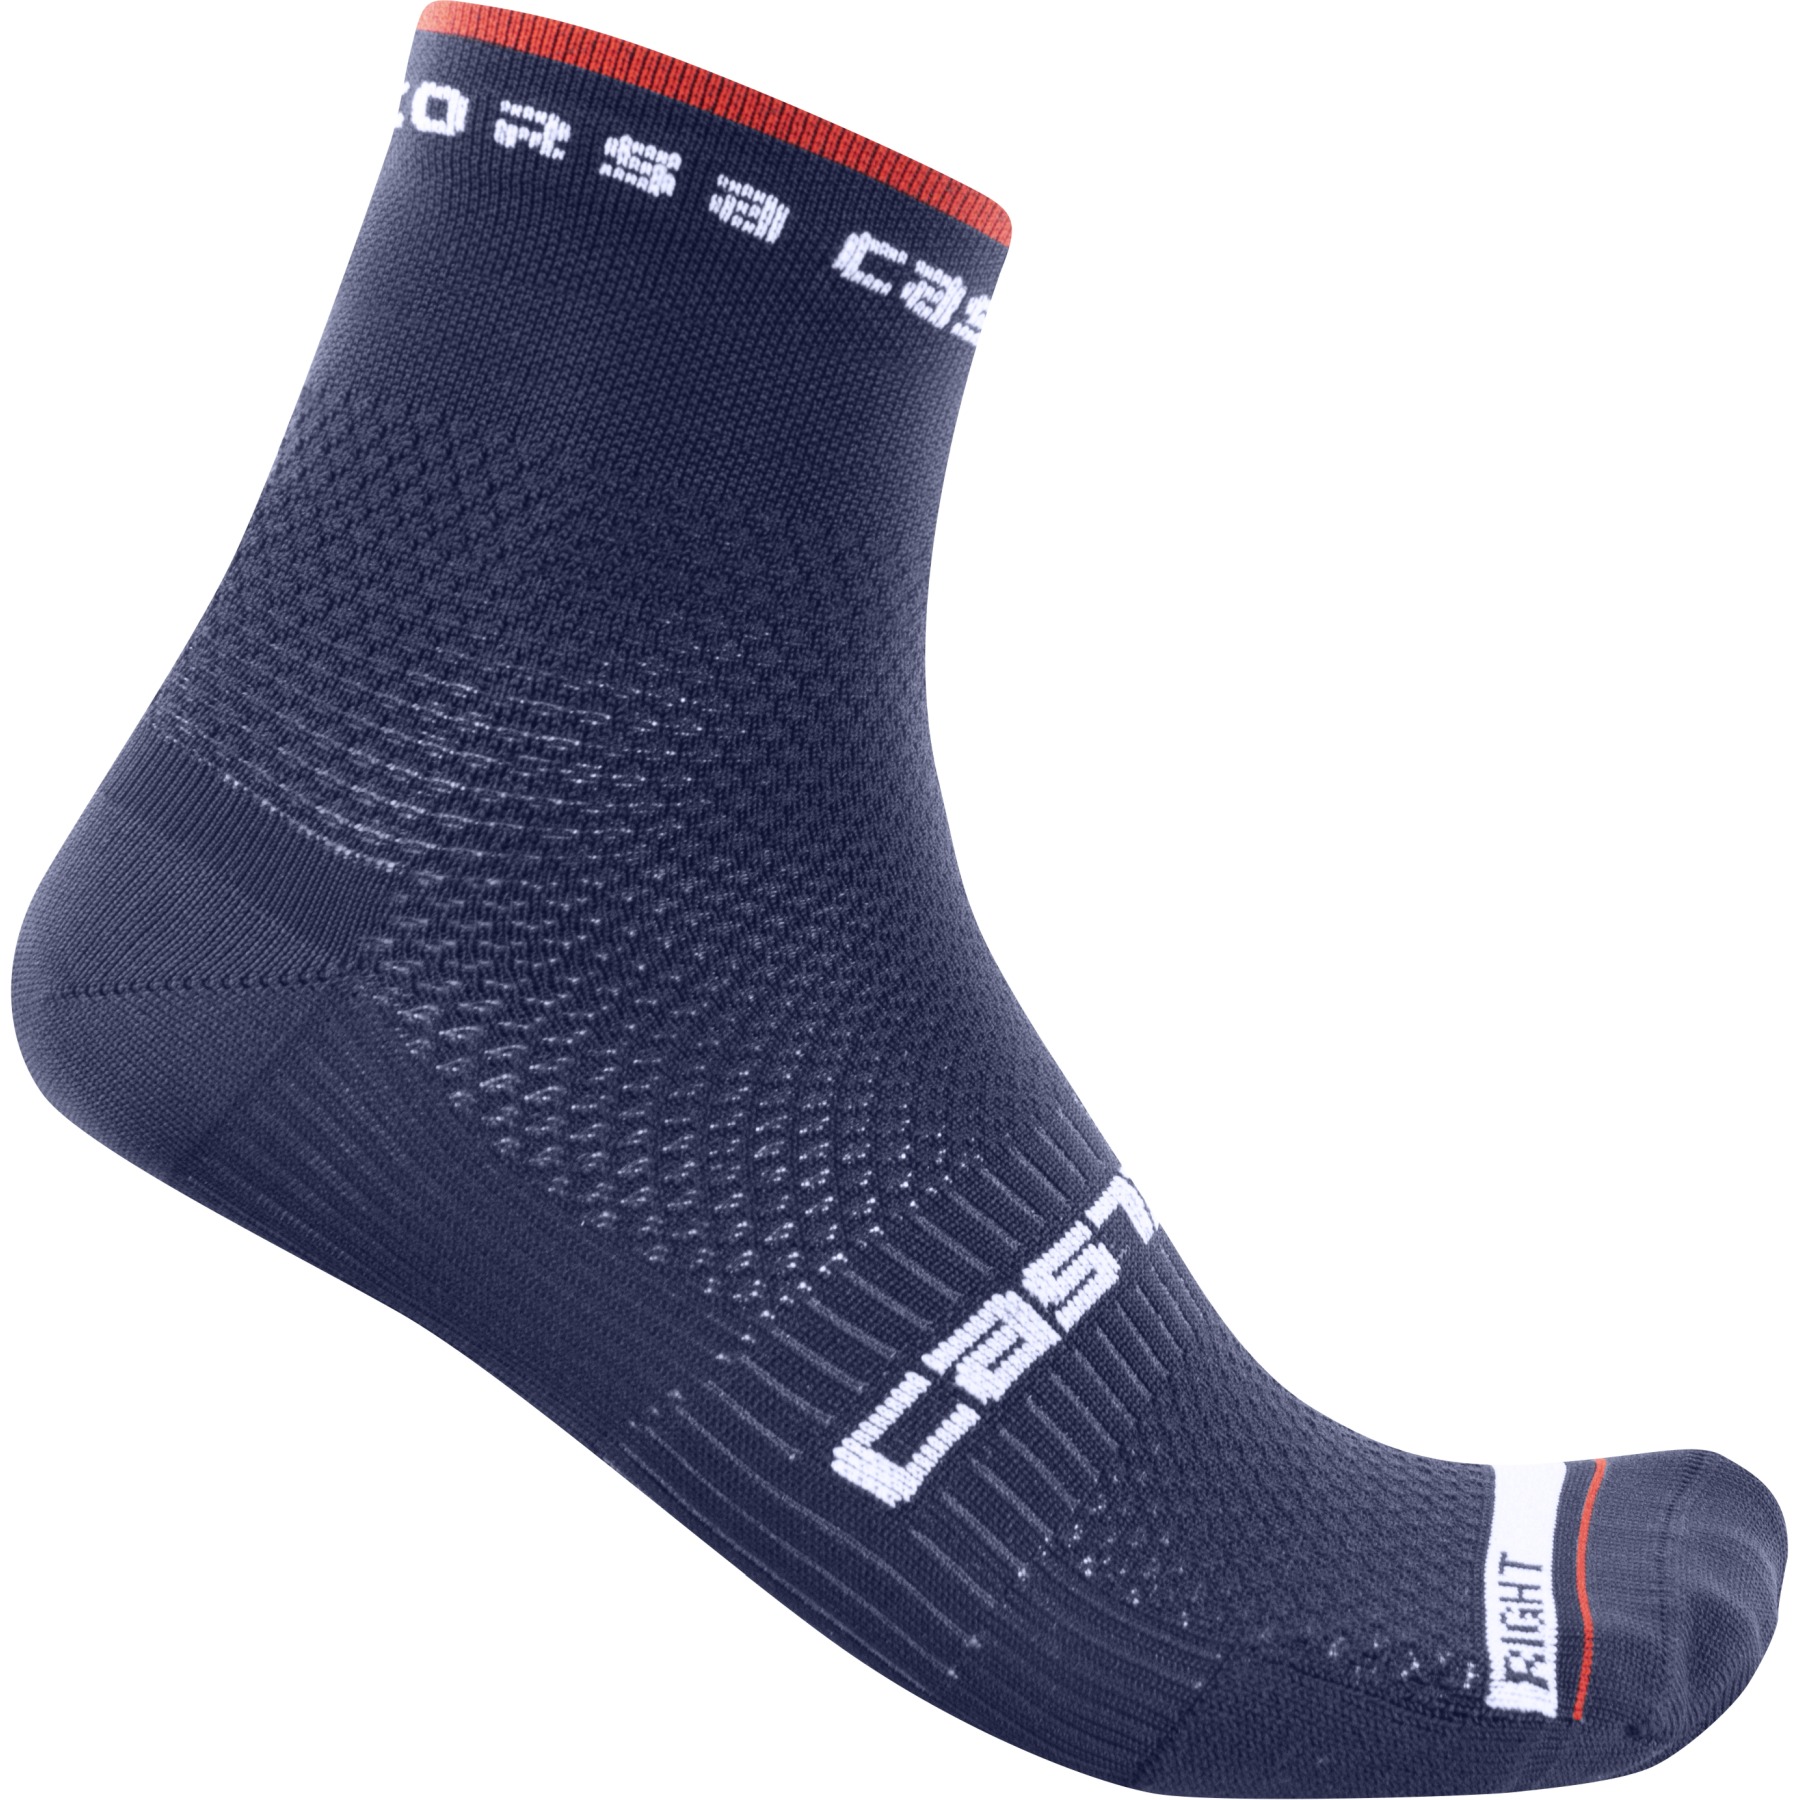 Produktbild von Castelli Rosso Corsa Pro 9 Socken - belgian blue 424